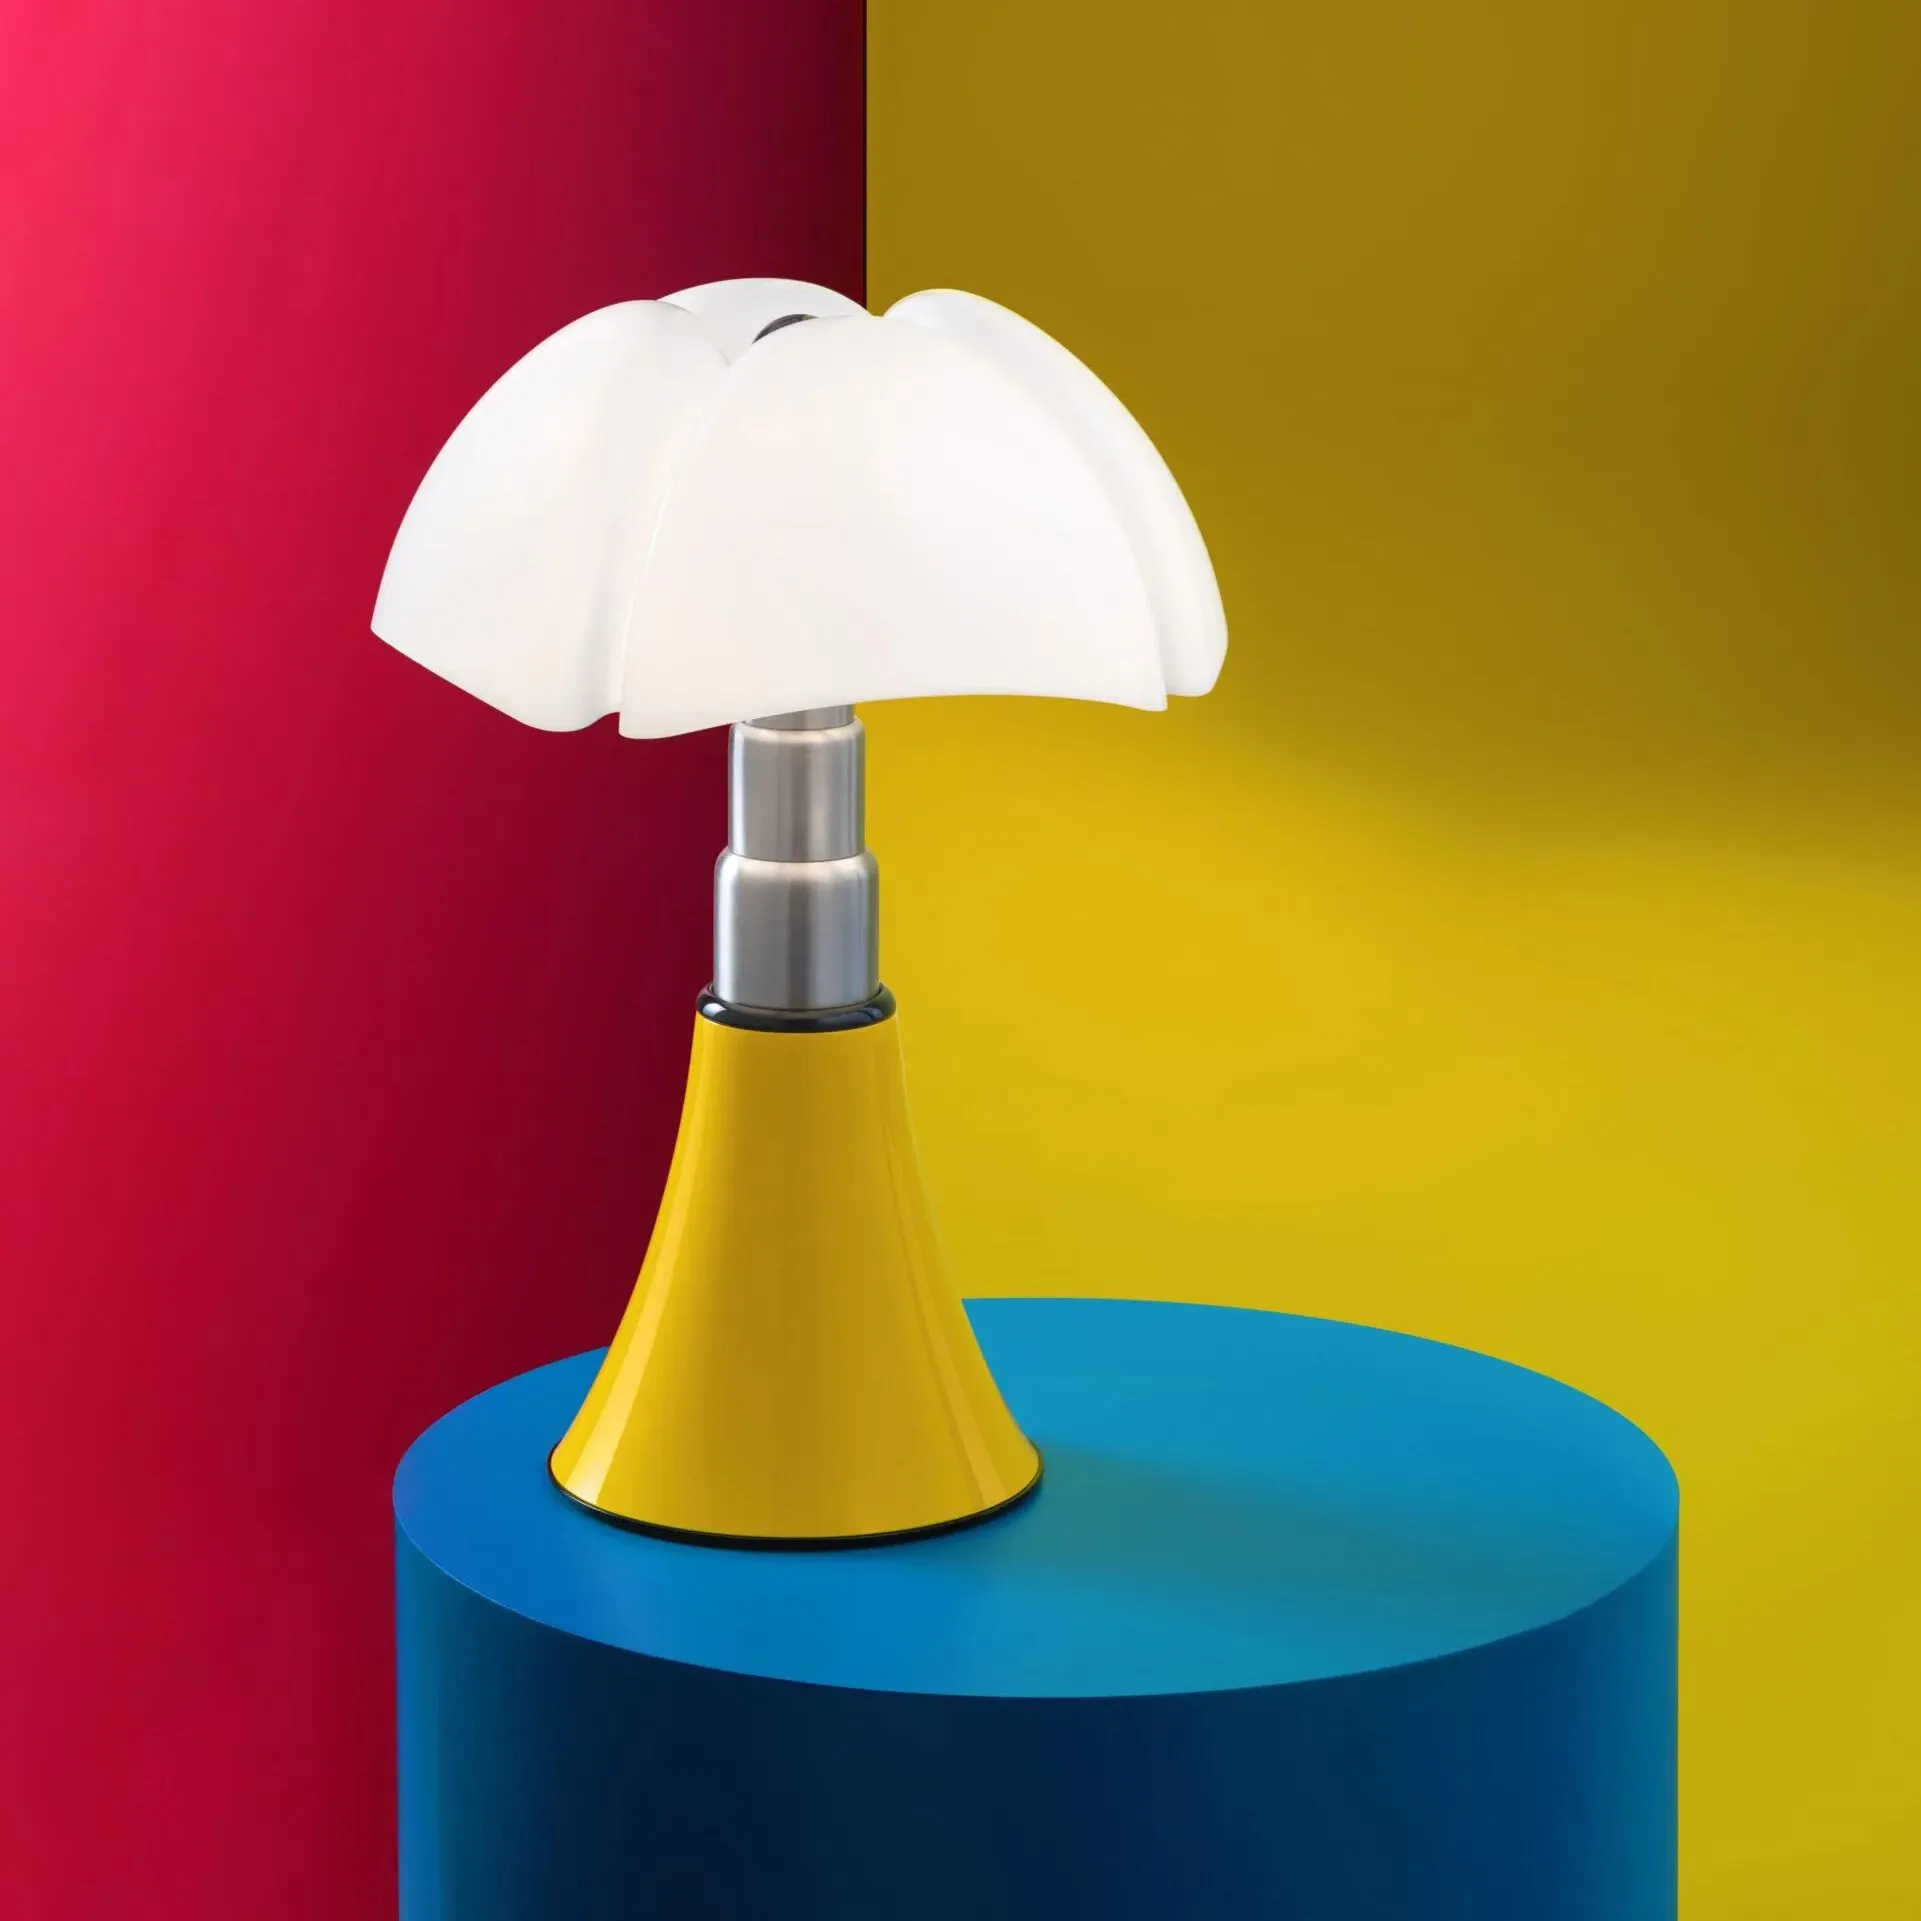 Pipistrello Pop: икона дизайна Гае Ауленти в уникальном жёлтом цвете